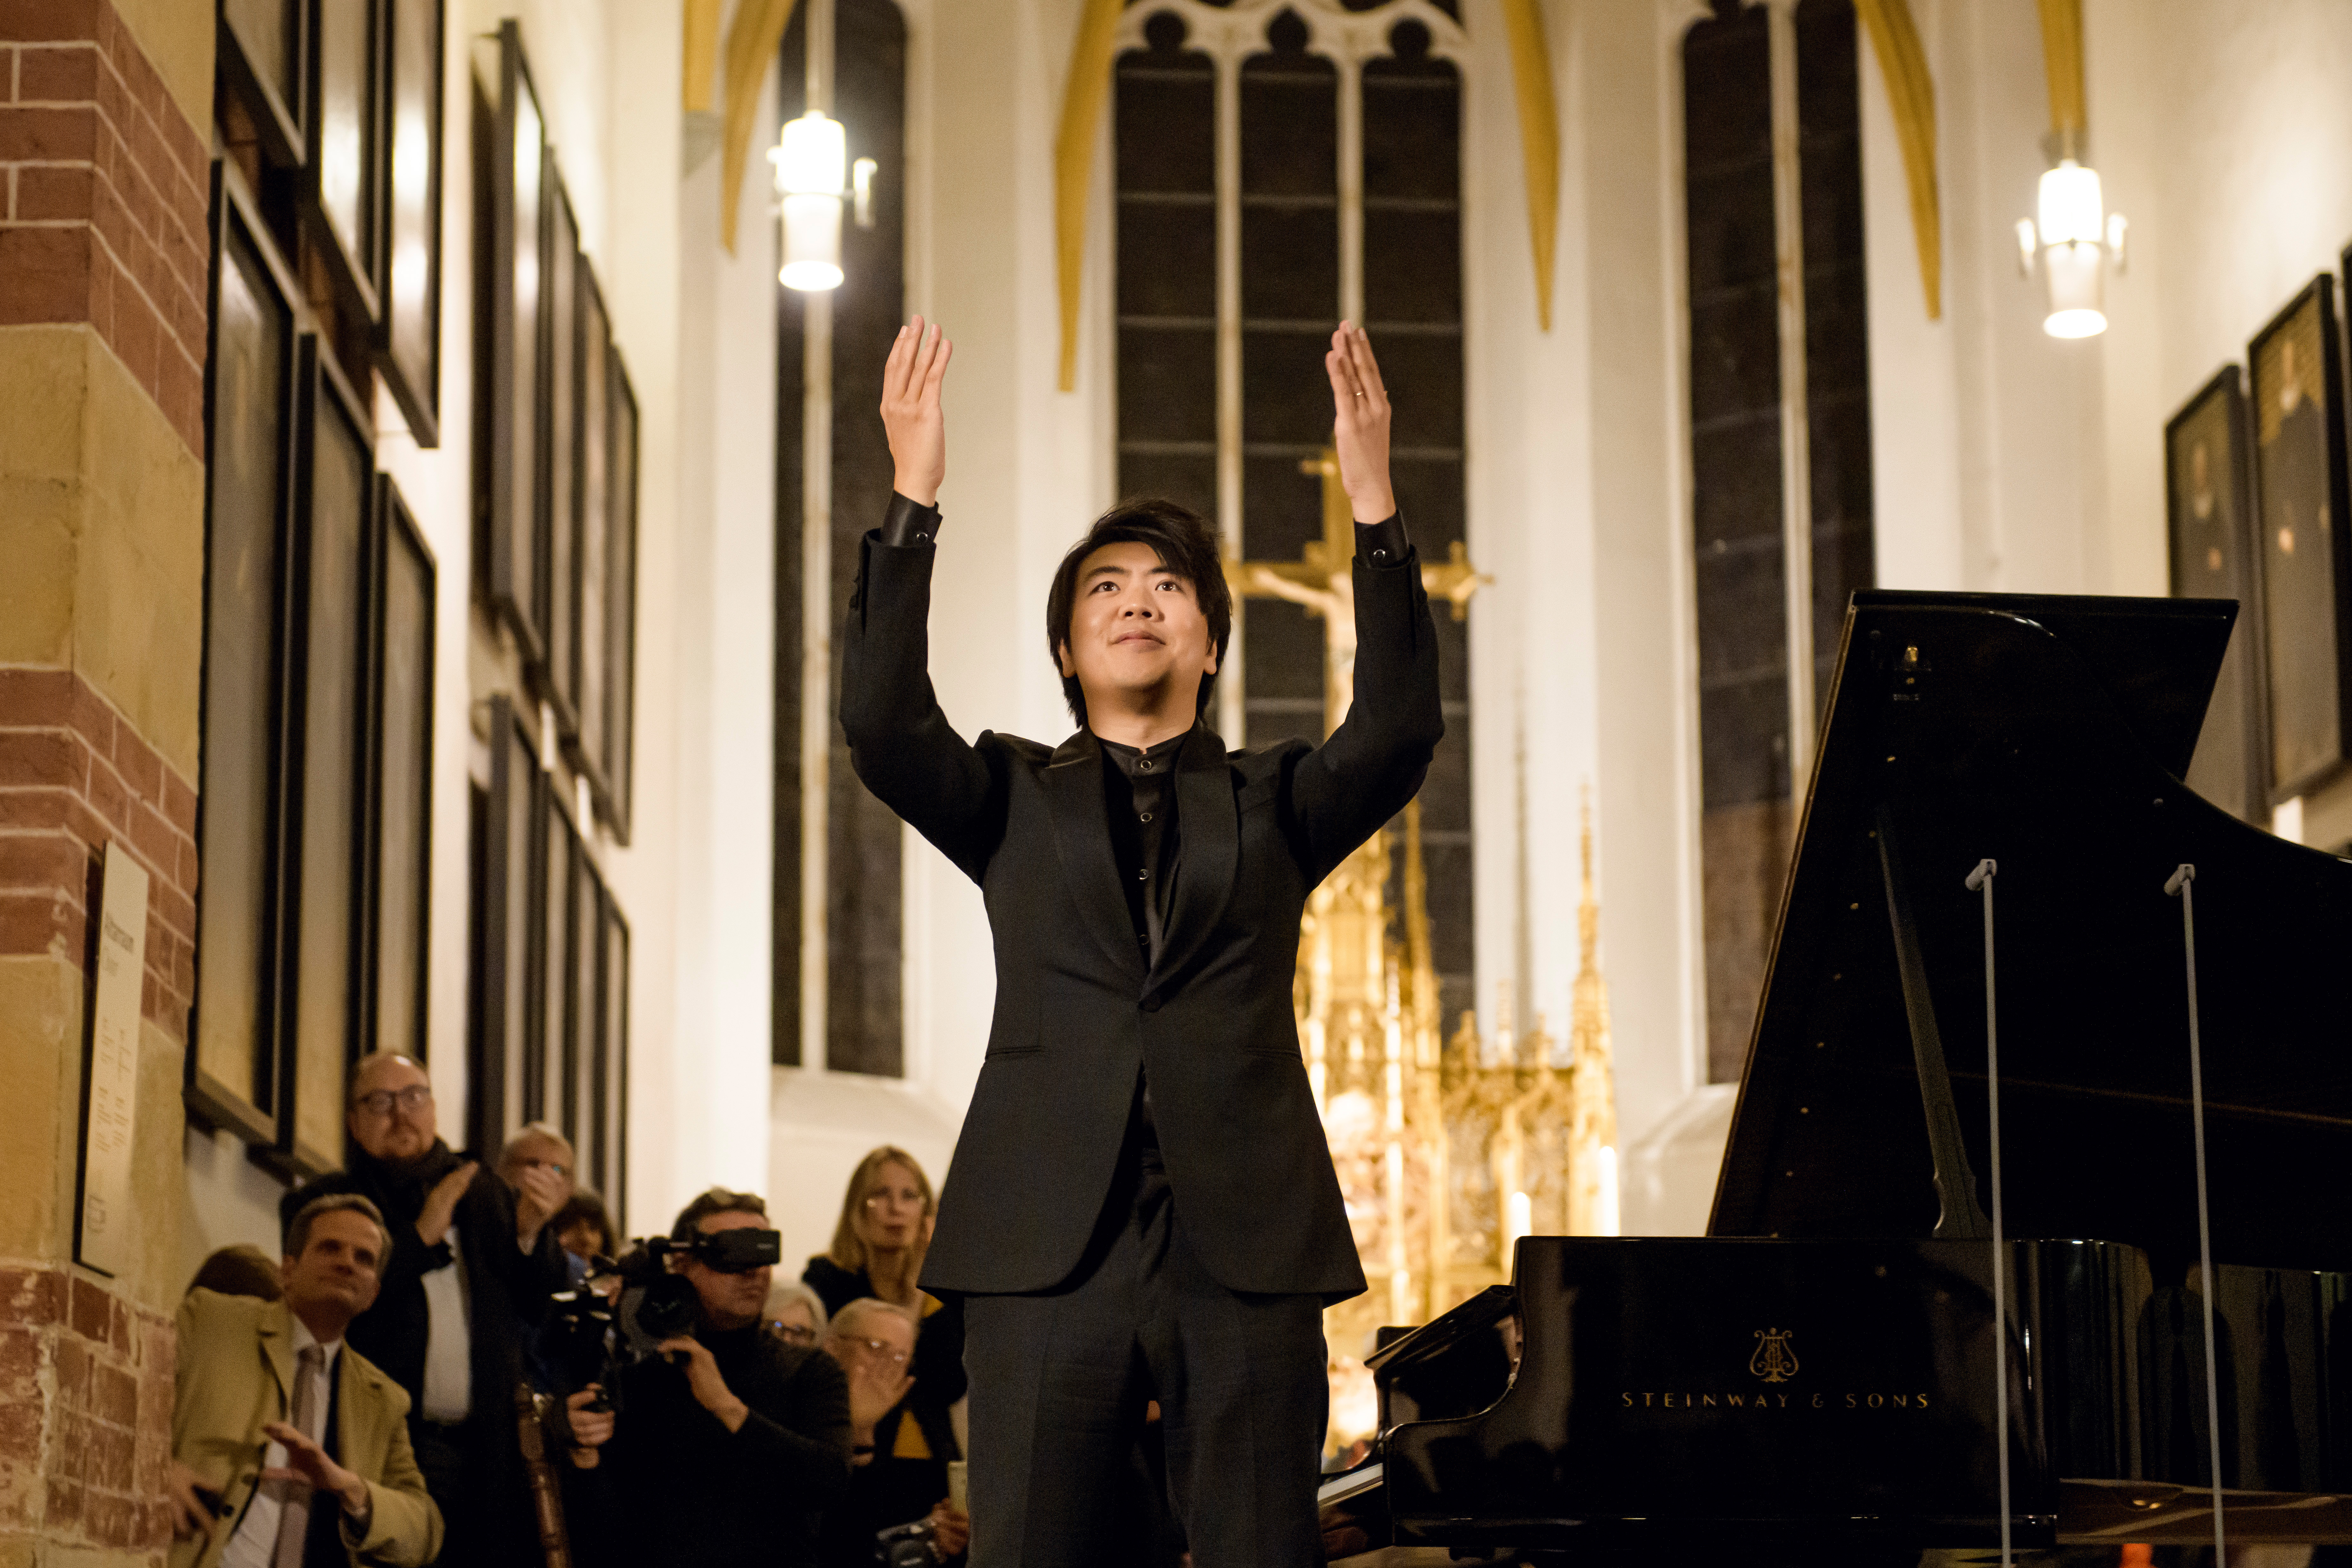 피아니스트 랑랑이 지난 3월 5일 독일 라이프치히 성 토마스 교회에서 골드베르크 변주곡을 연주한 뒤 관객들에게 인사하고 있다. &copy; Stefan Hoederath